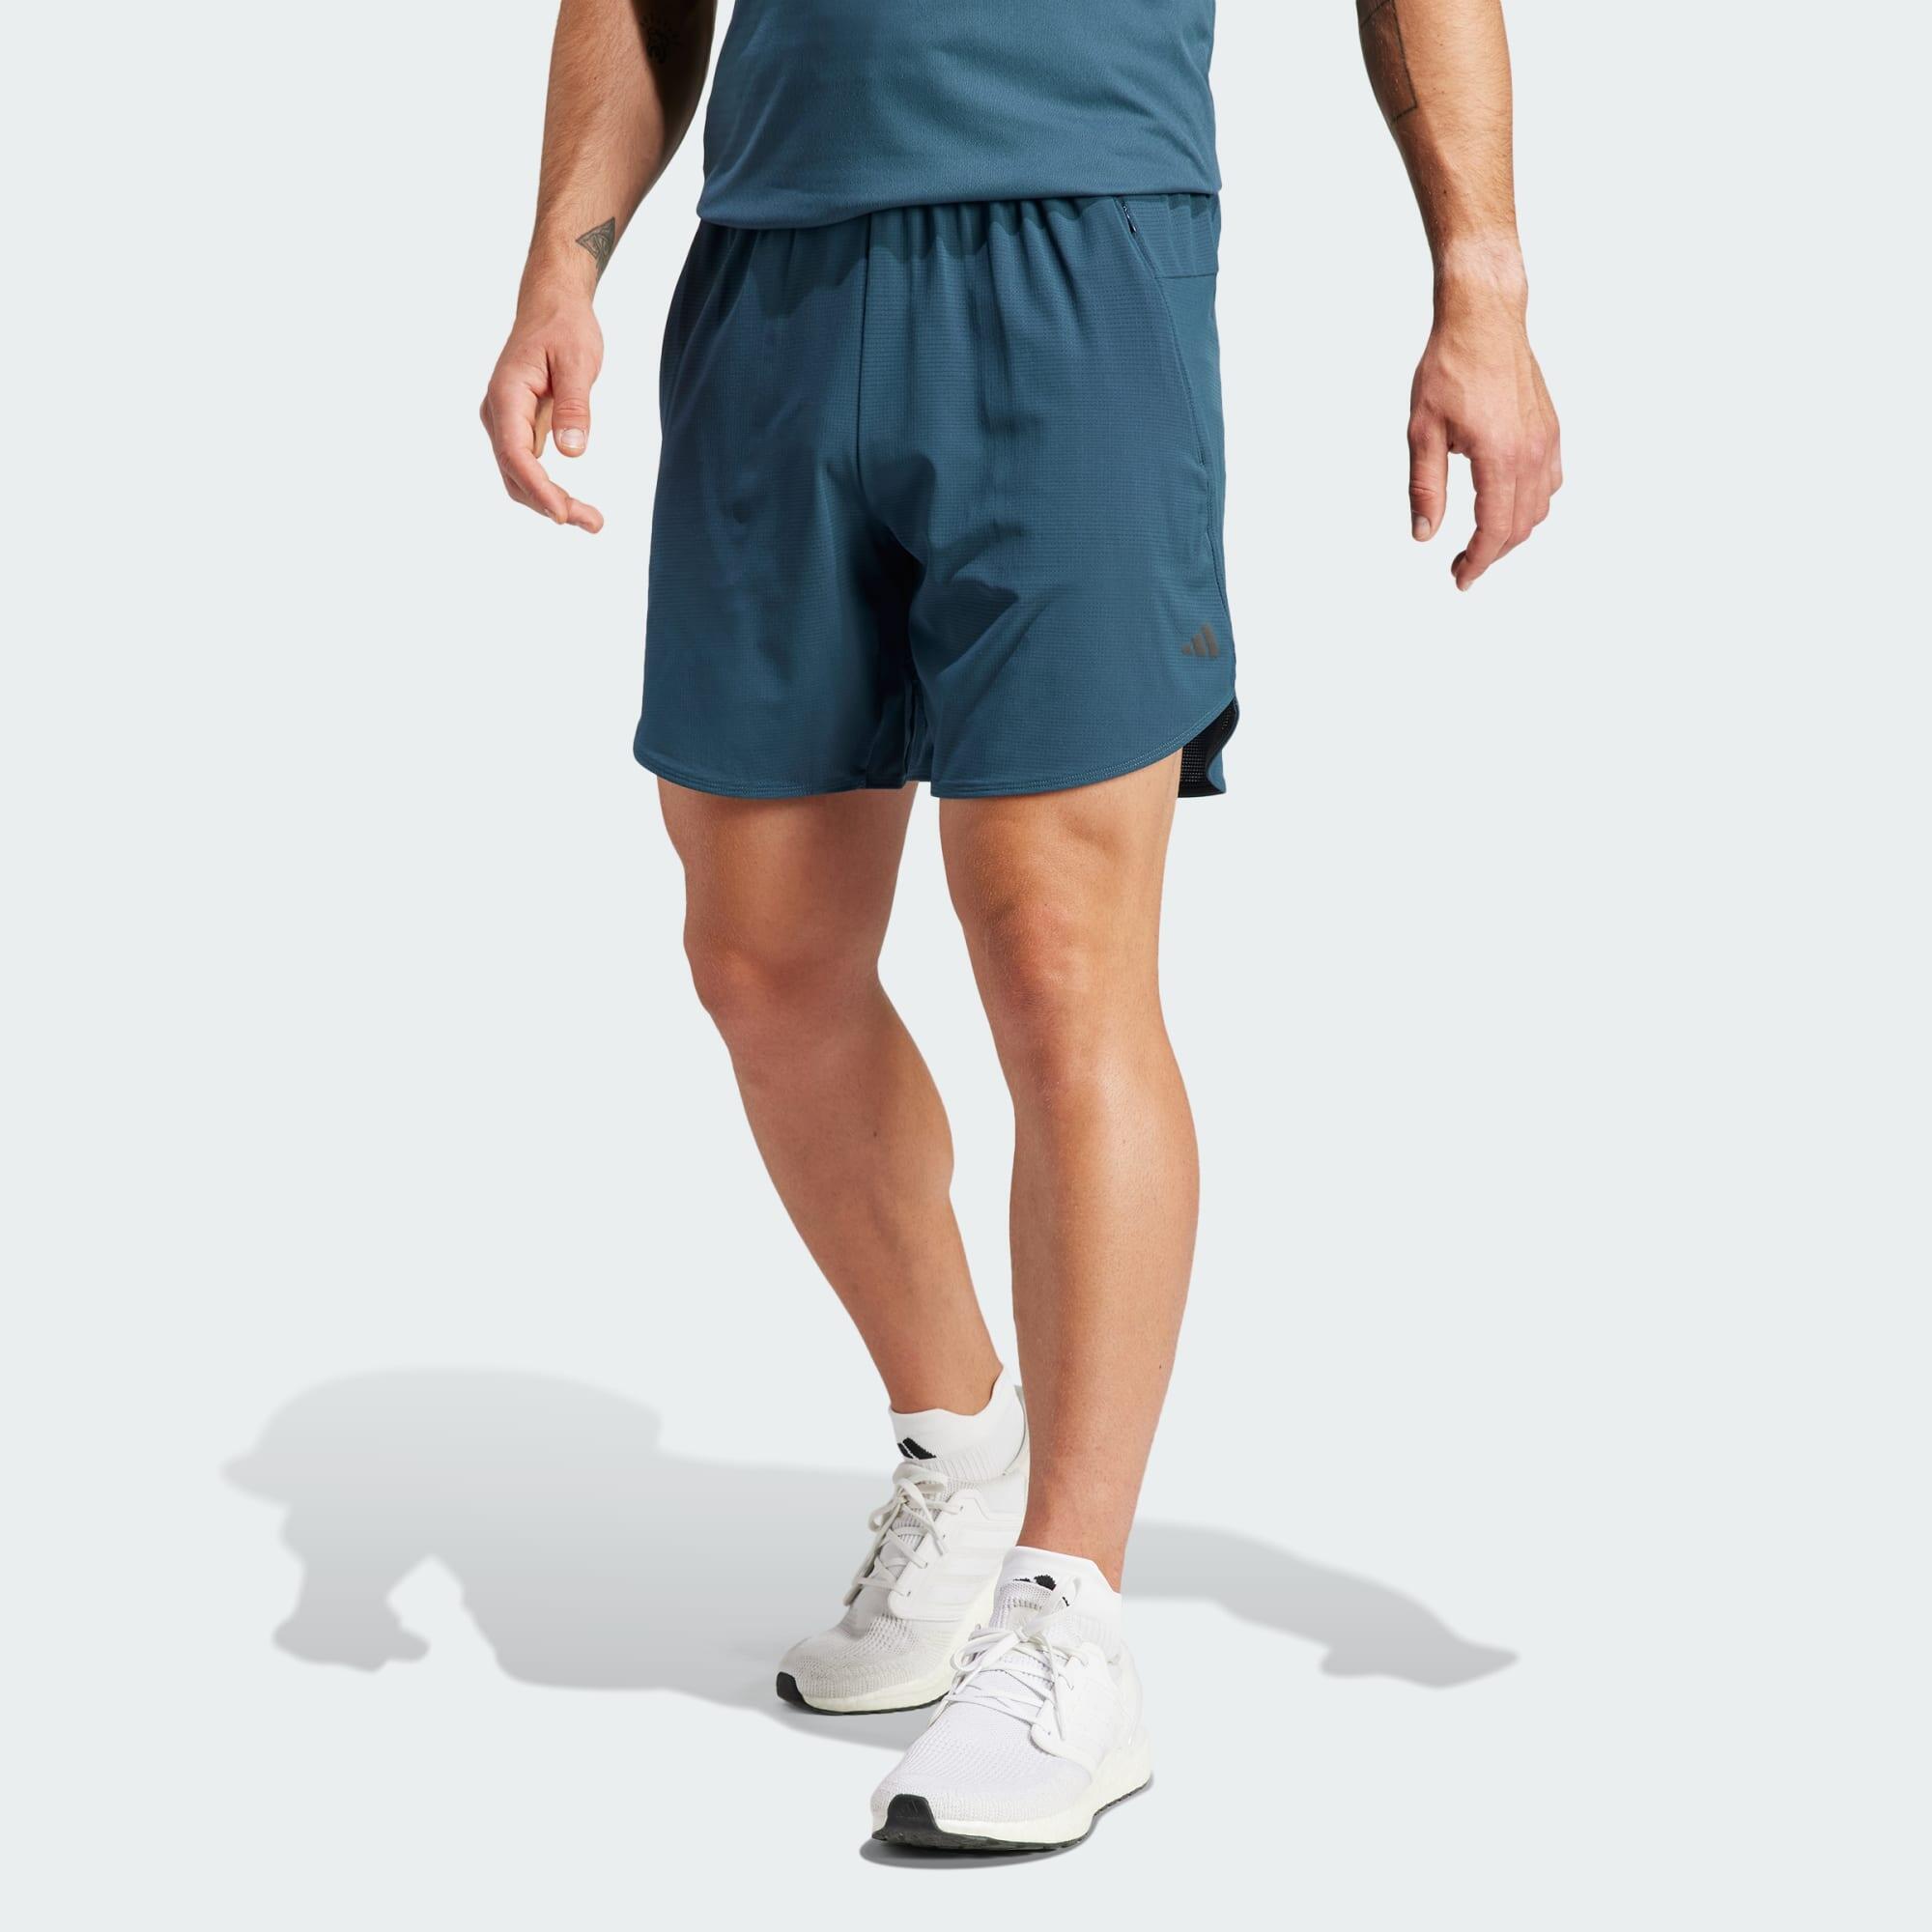 ADIDAS Designed for Training HIIT Training Shorts